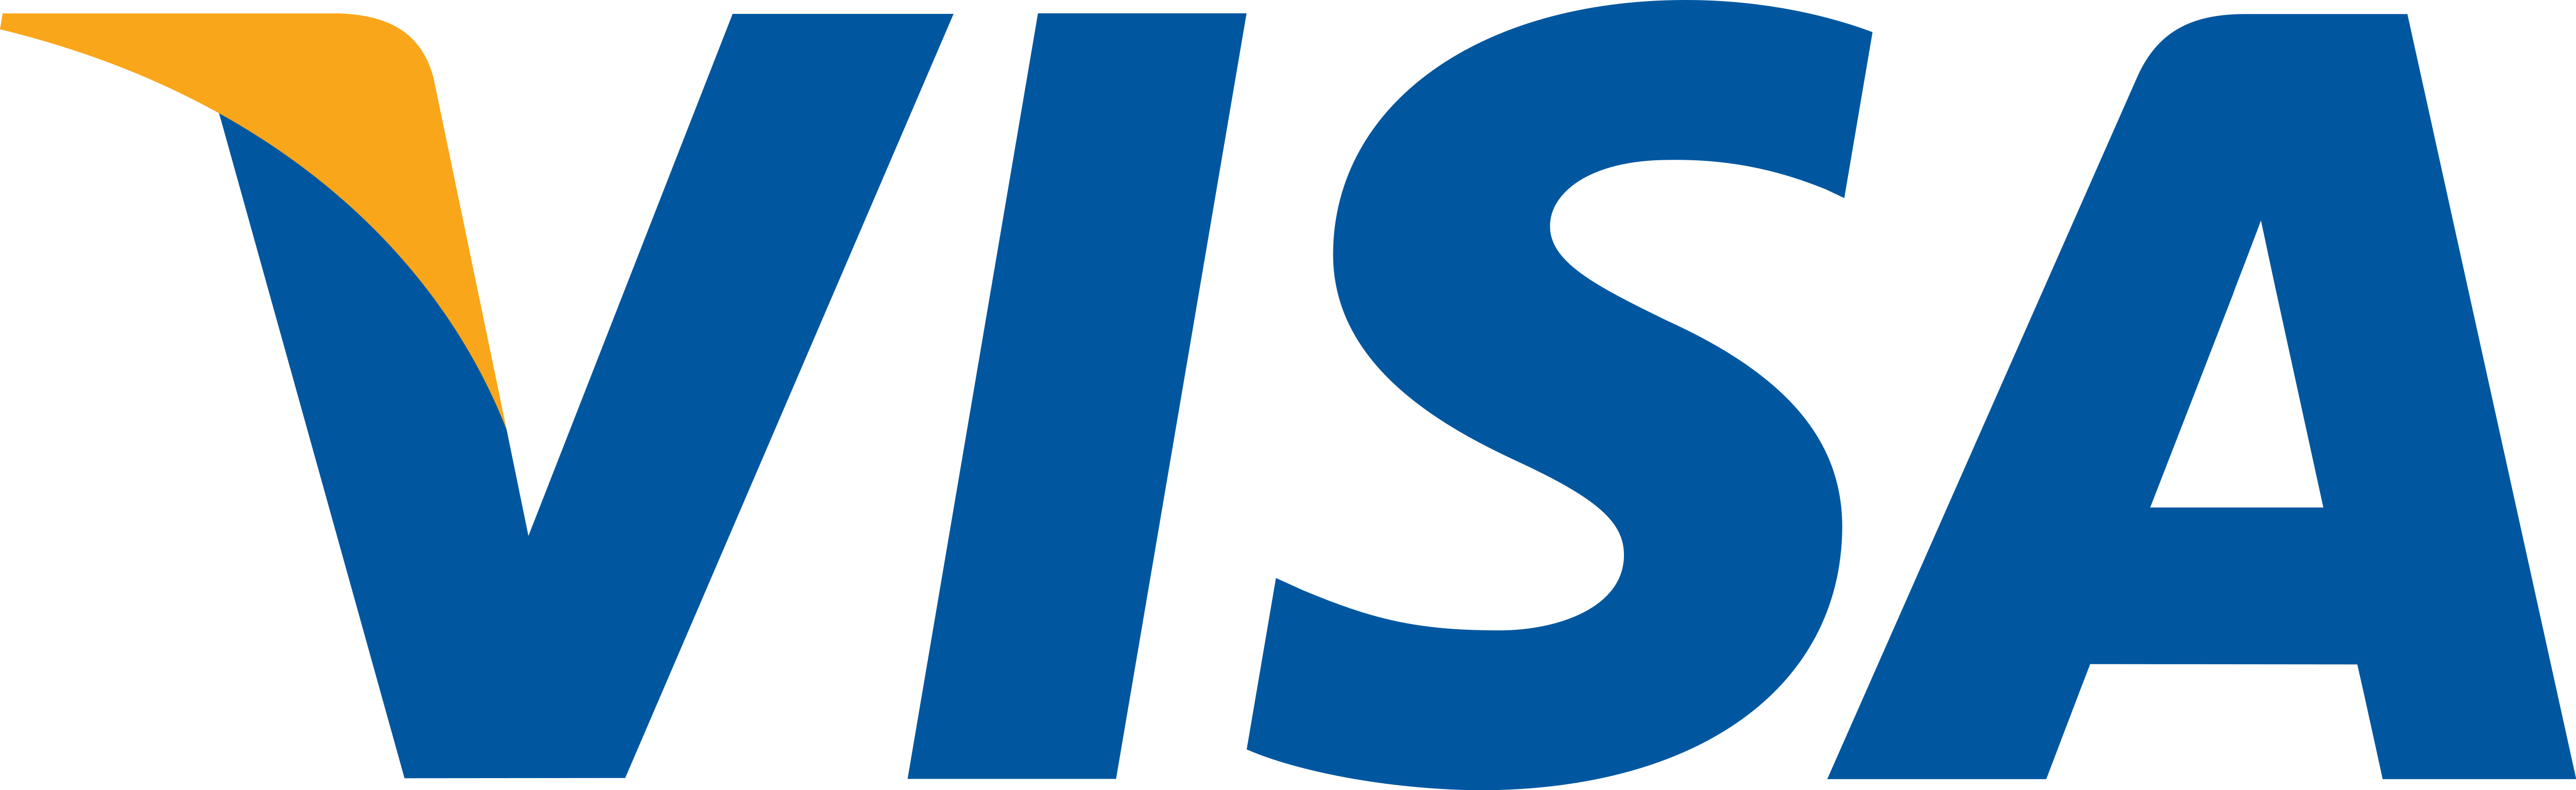 Visa Card Logo PNG Photo Clip Art Image